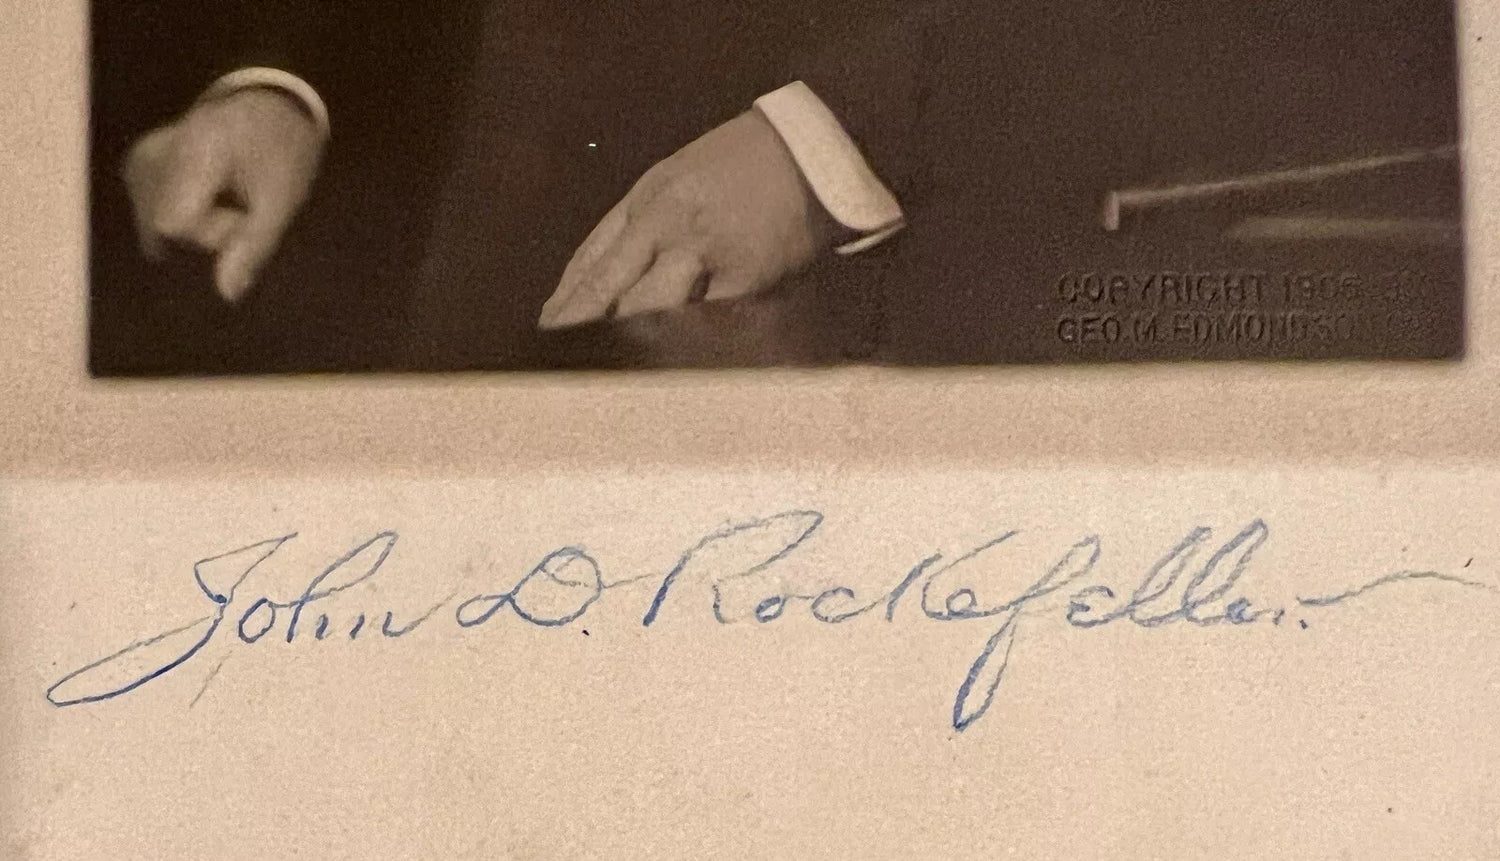 Rare John D Rockefeller Signed Photo, Full Name Signature. Auto PSA